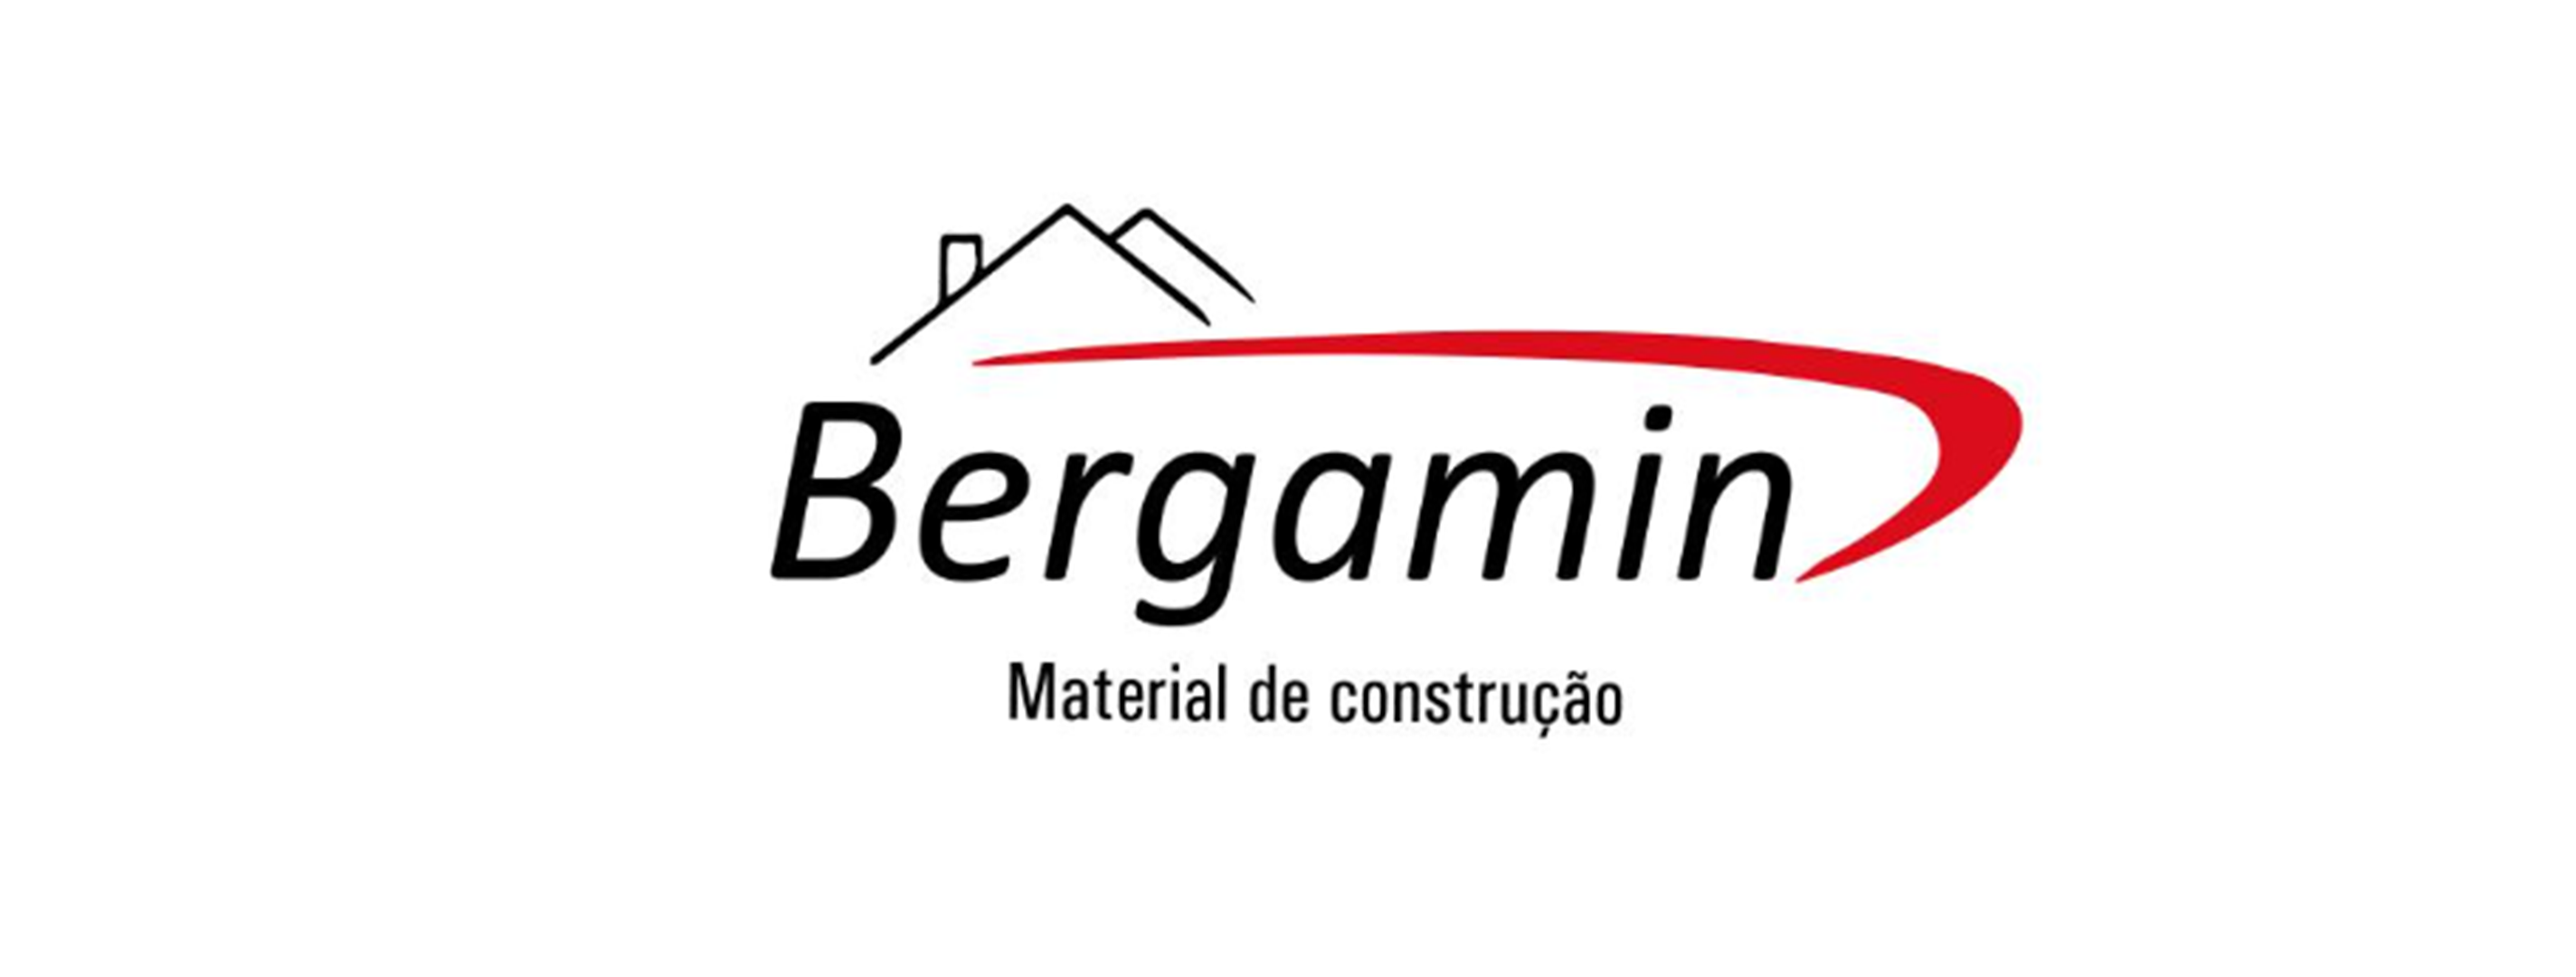 Bergamin Materiais de Construção